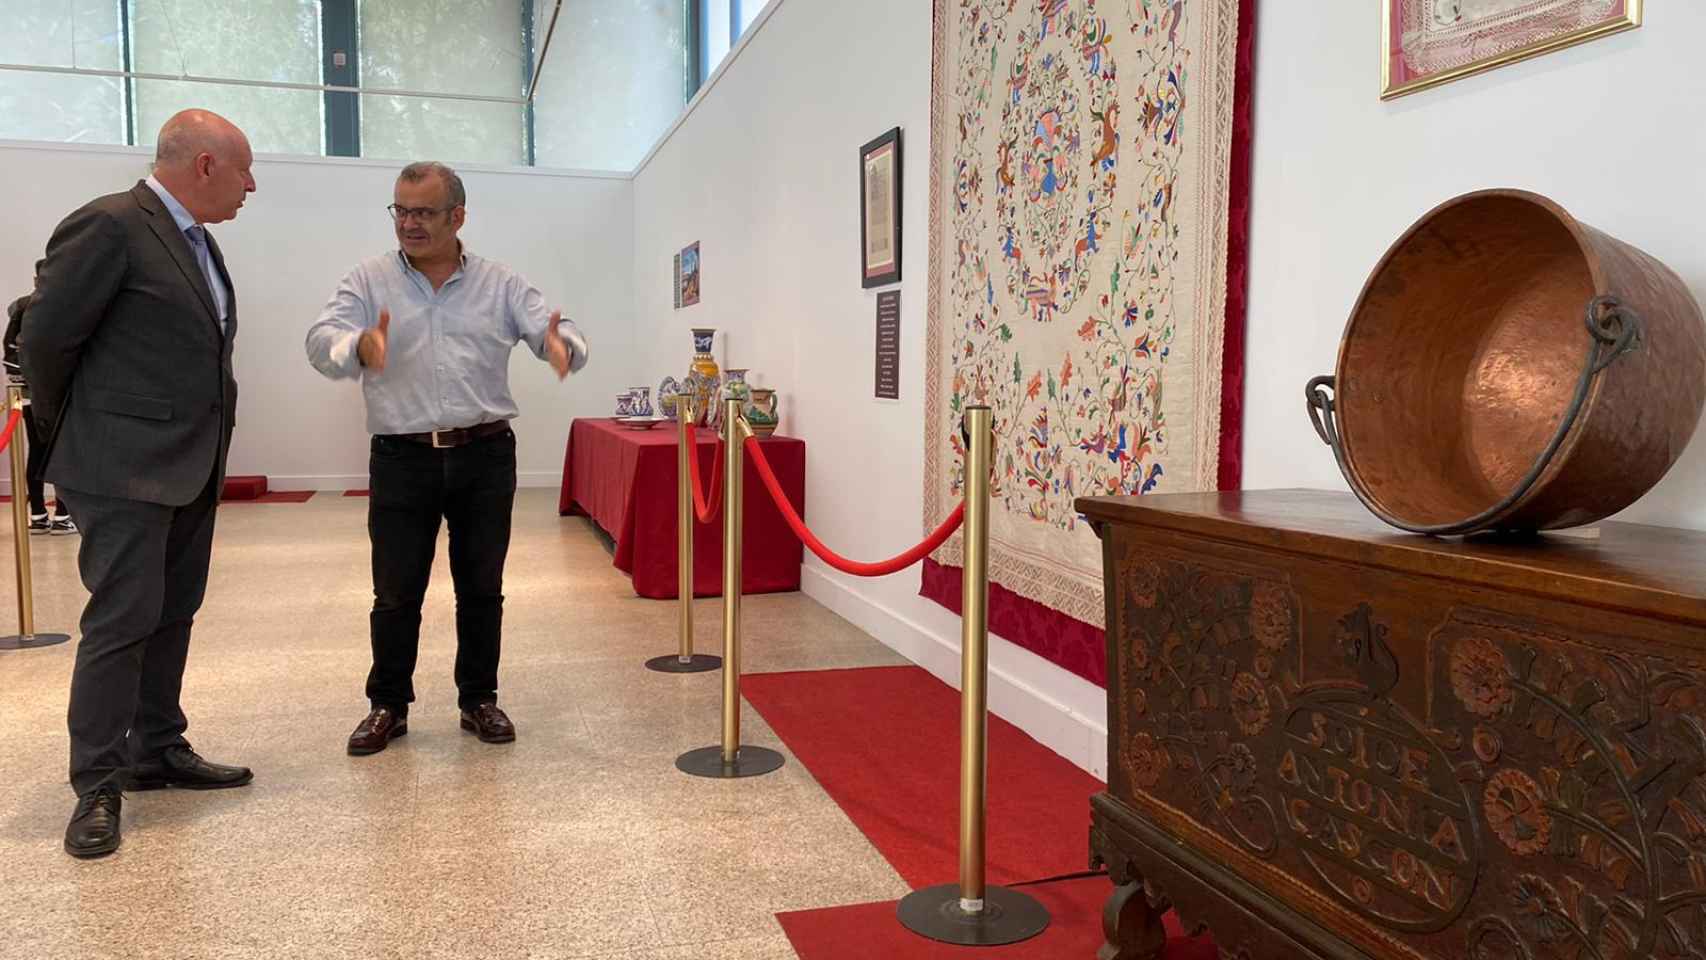 A la inauguración ha asistido el concejal de Promoción Económica del Ayuntamiento de Salamanca, Juan José Sánchez, así como el promotor cultural Manuel Sánchez Hoyos.